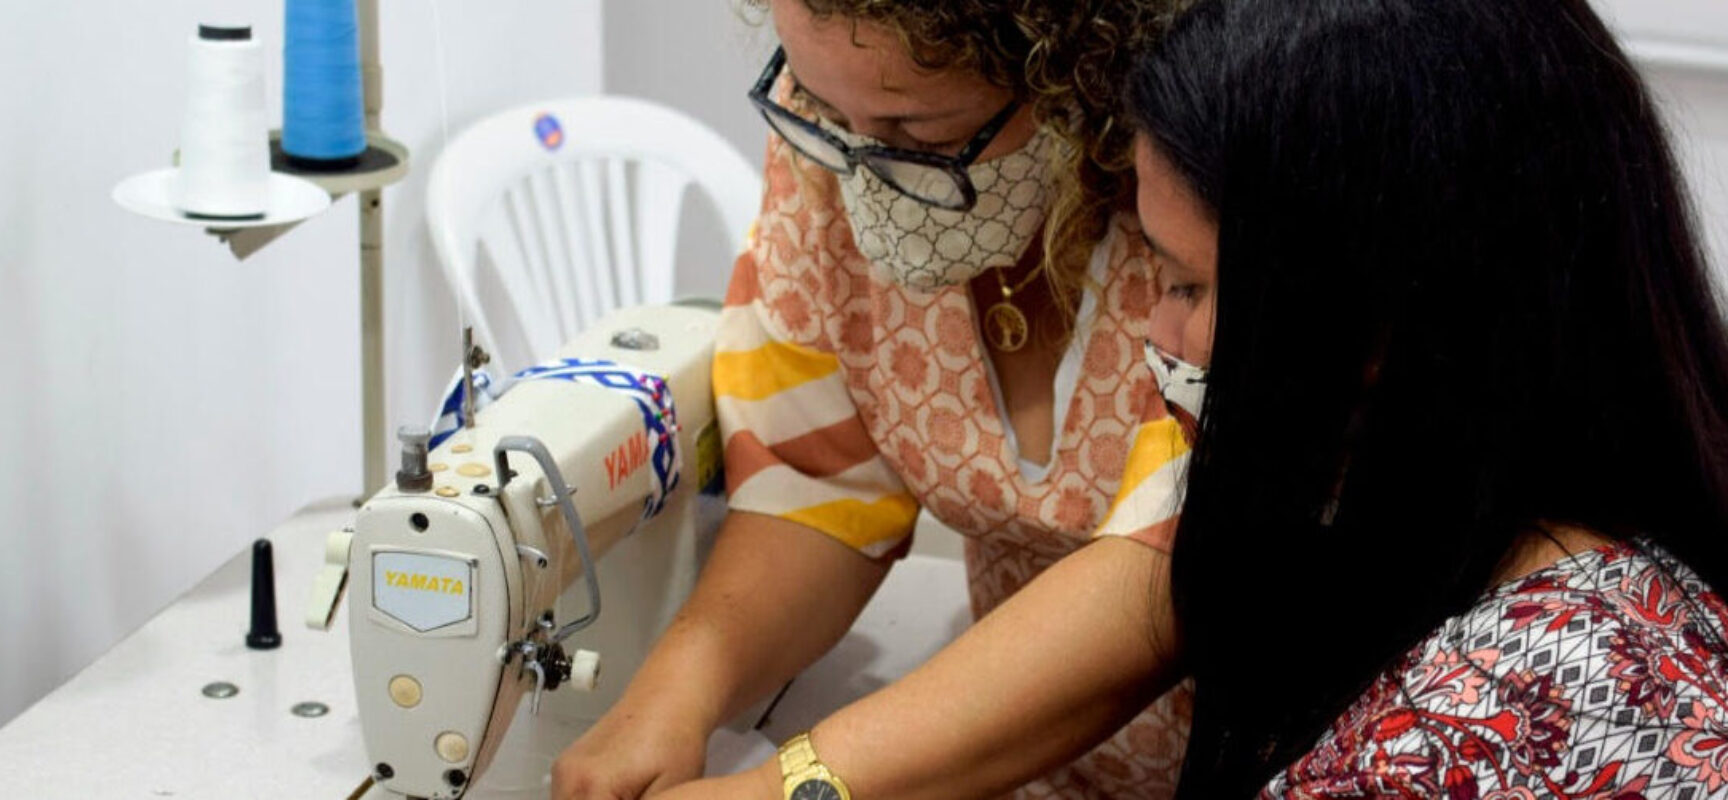 Projeto solidário estimula protagonismo feminino na produção, venda e doação de máscaras contra a Covid-19